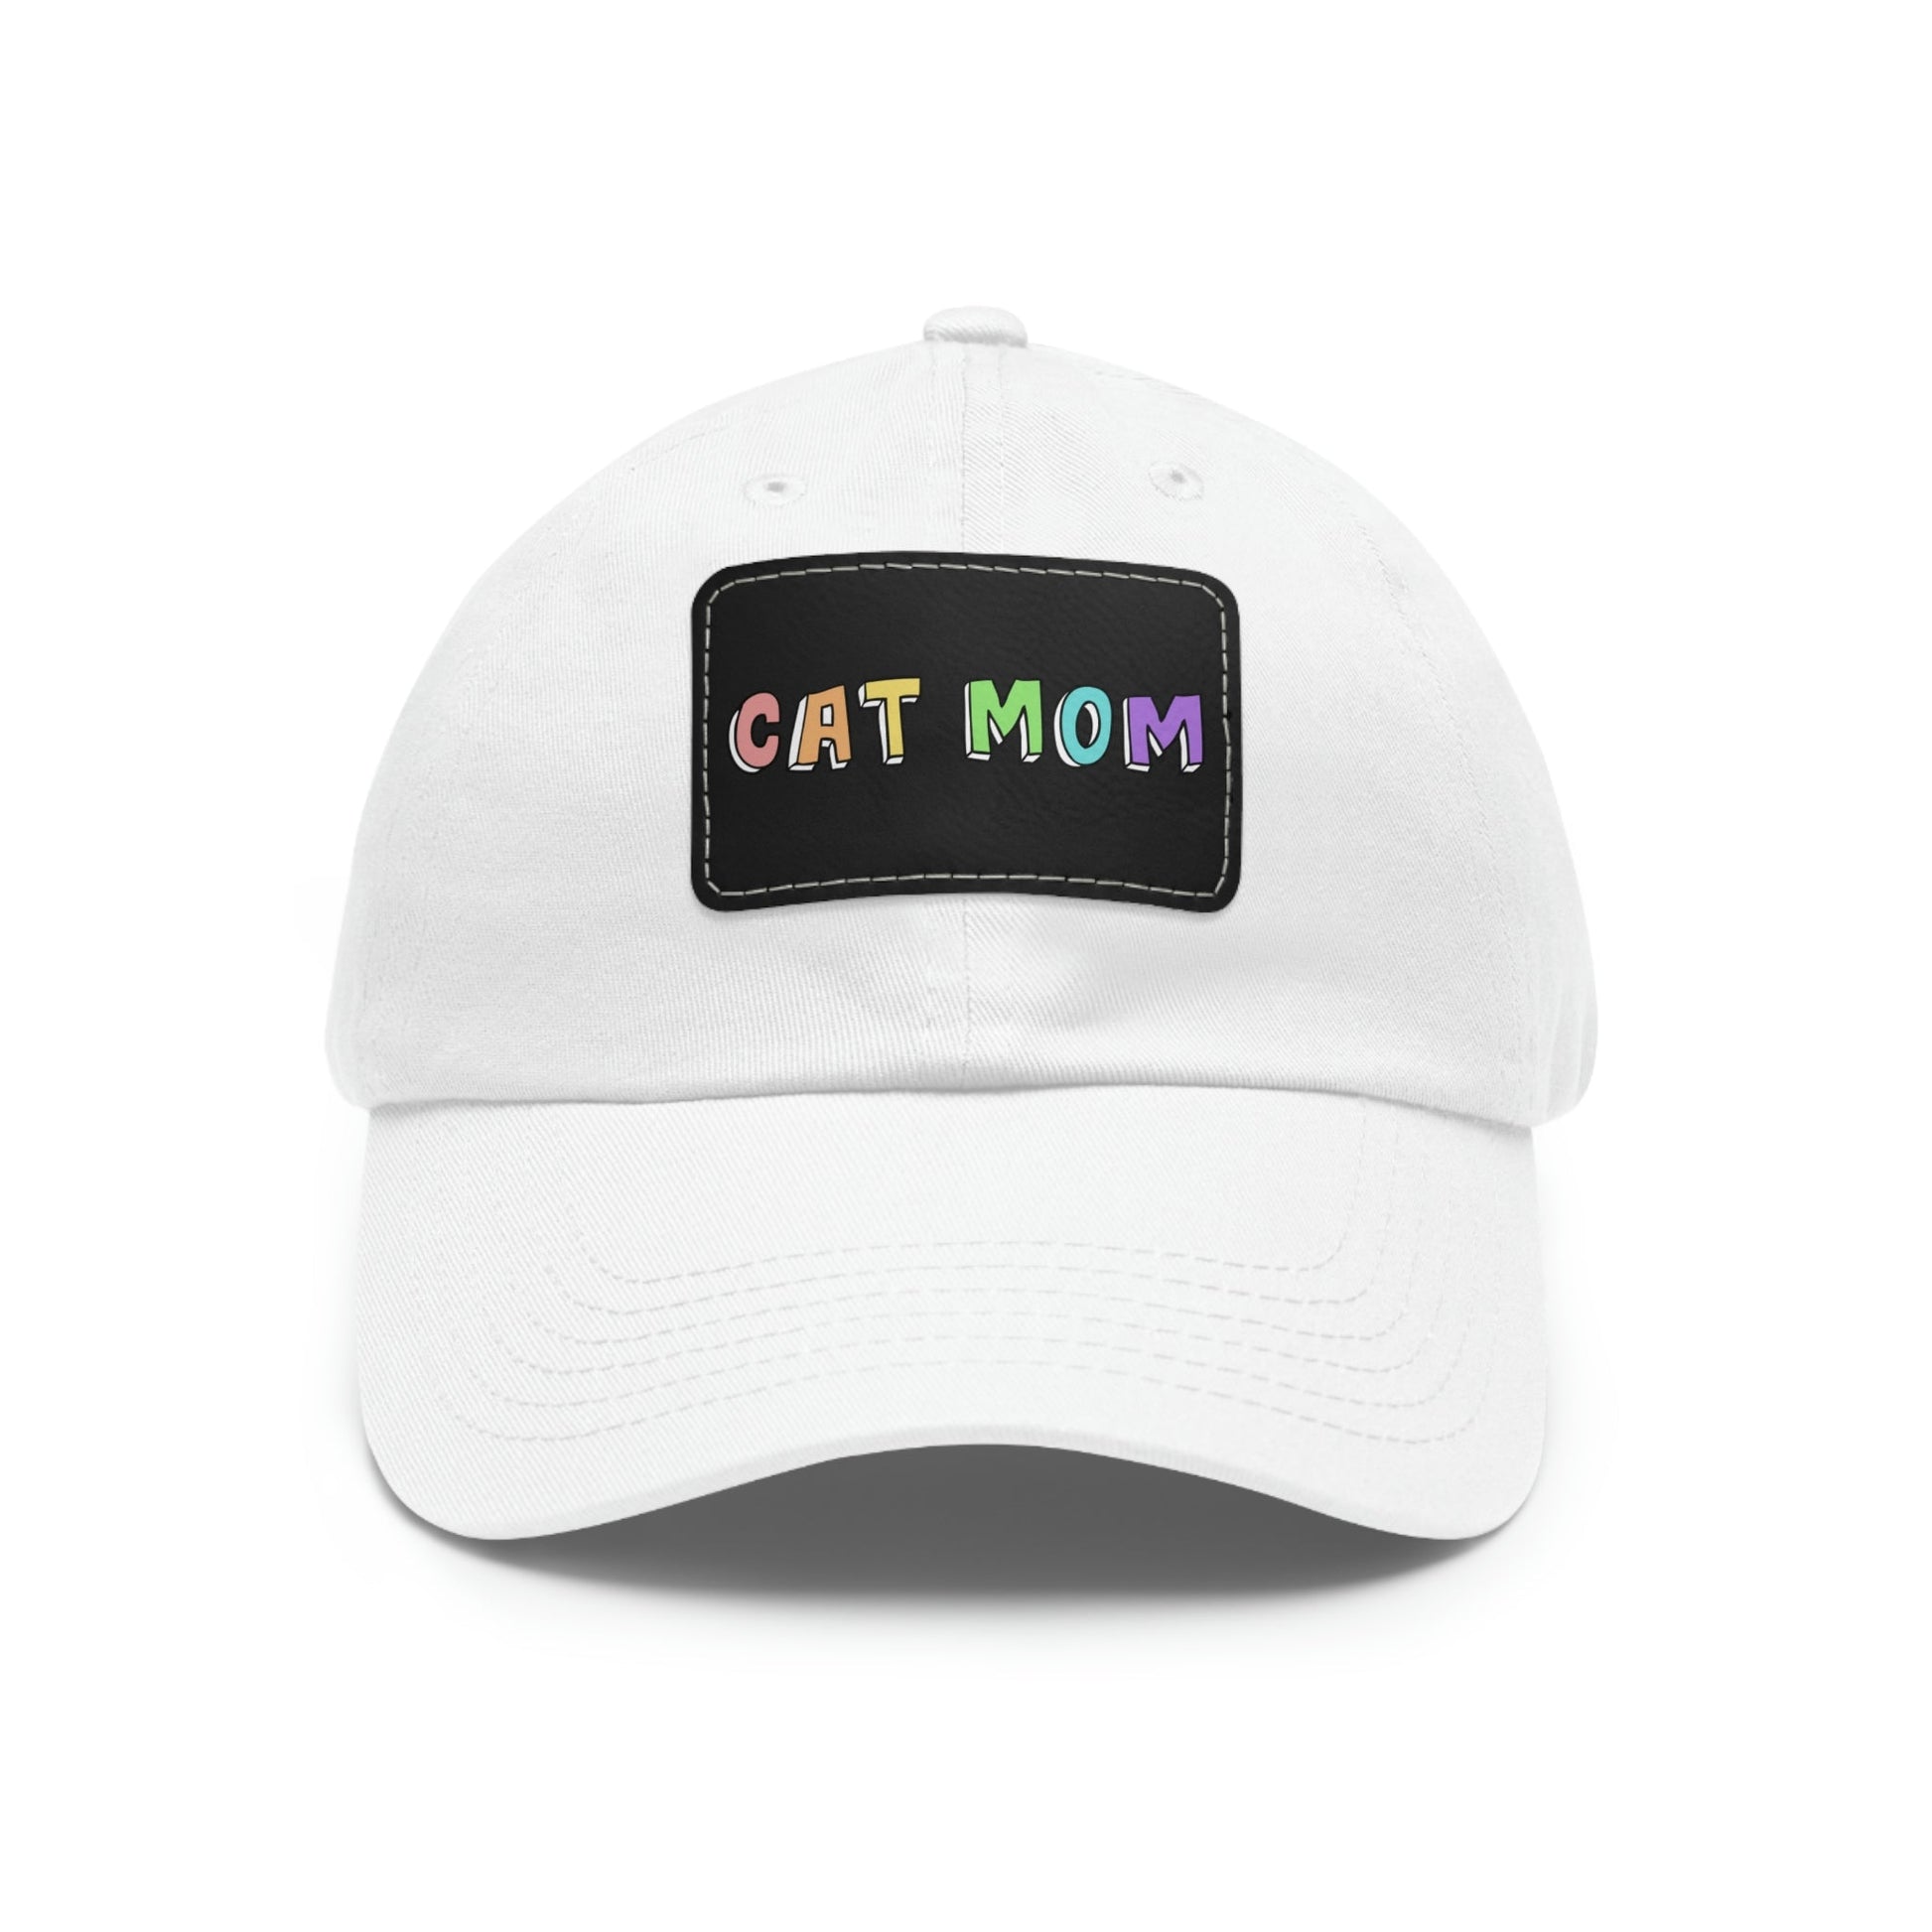 Cat Mom | Dad Hat - Detezi Designs-72125145651830253753